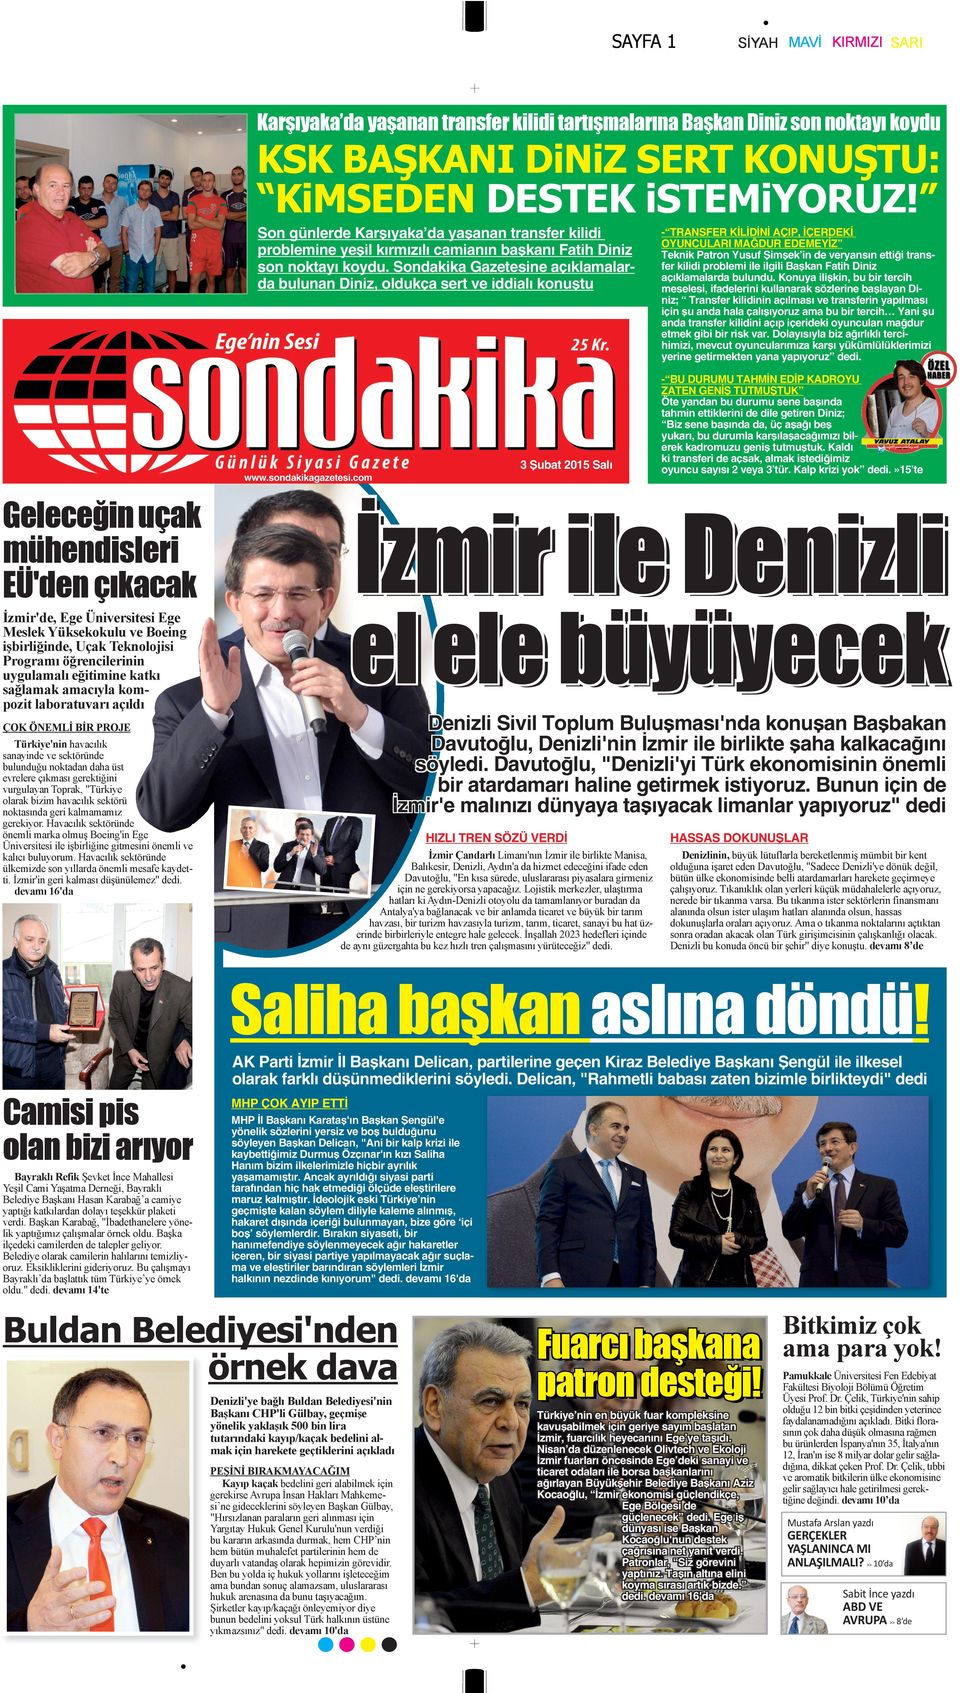 Sondakika Gazetesine açıklamalarda bulunan Diniz, oldukça sert ve iddialı konuştu 3 Şubat 2015 Salı www.sondakikagazetesi.